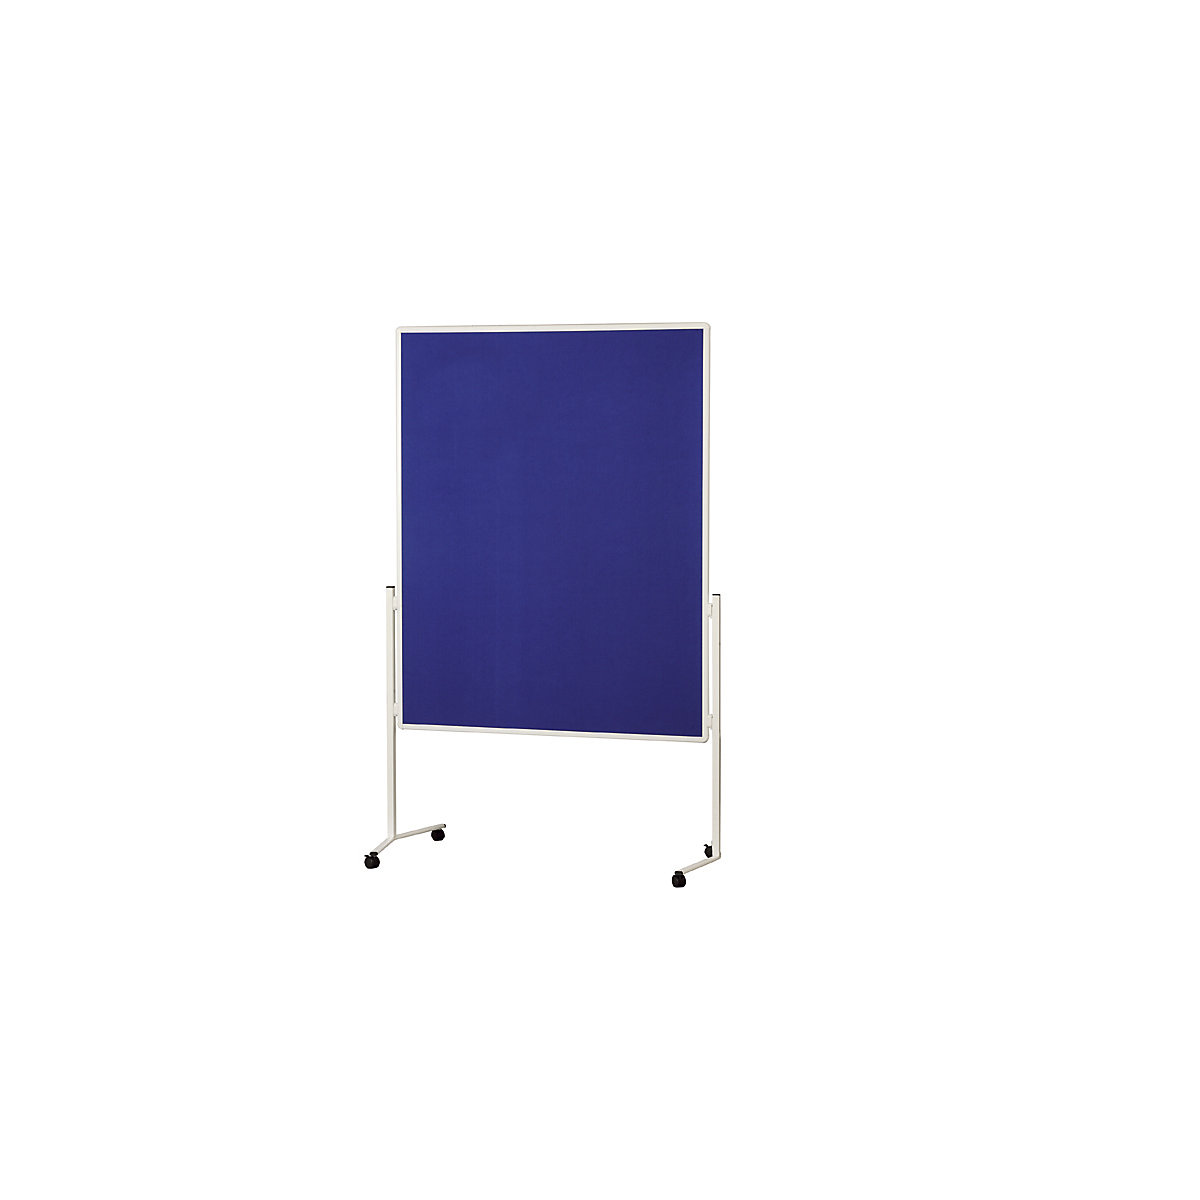 Lavagna per presentazioni, telaio portante bianco – magnetoplan, un pezzo unico, feltro blu-4